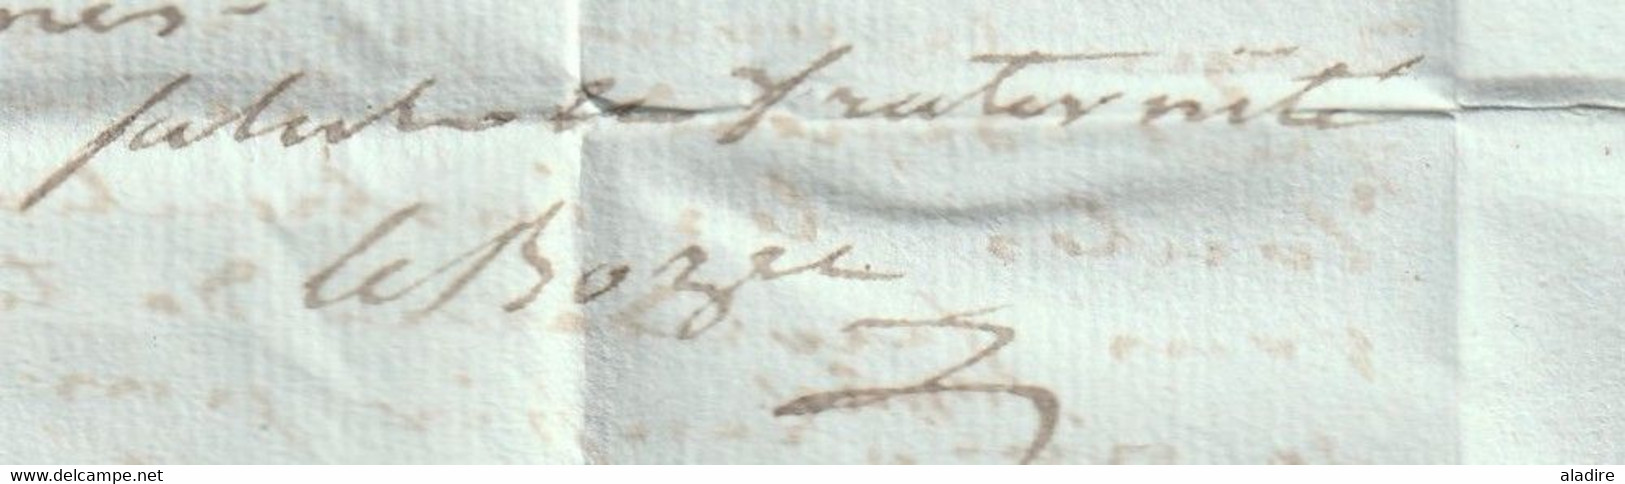 An 3 - 1795 - Marque postale 28 MORLAIX sur LAC de 2 pages vers LANNION - période de la Convention Nationale